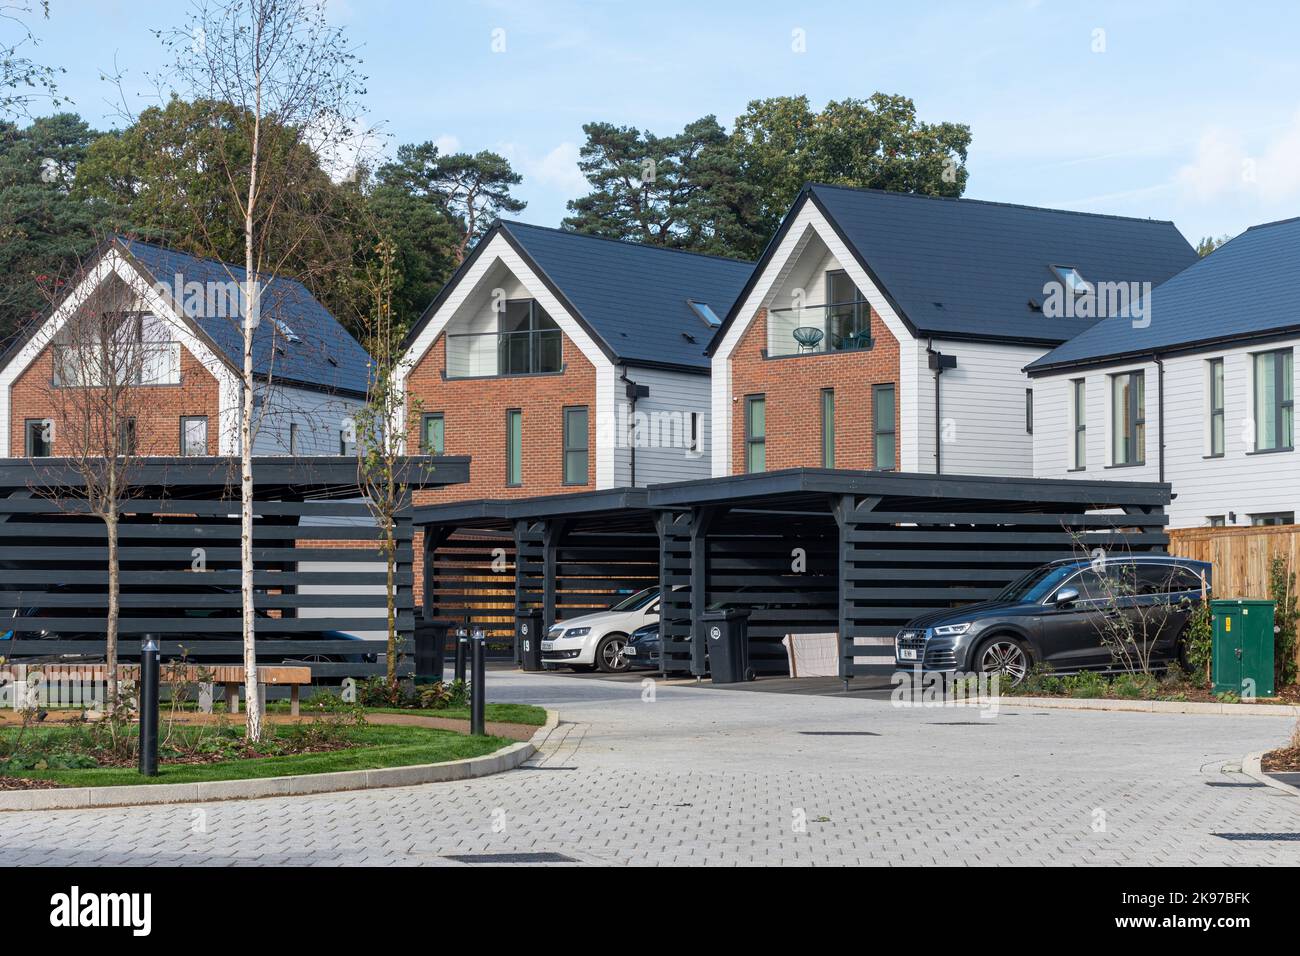 Nuovo sviluppo di alloggi chiamato Mindenhurst nel villaggio di Deepcut, Surrey, Inghilterra, Regno Unito, nel 2022. Trivselhus case e carport in stile Scandi. Foto Stock